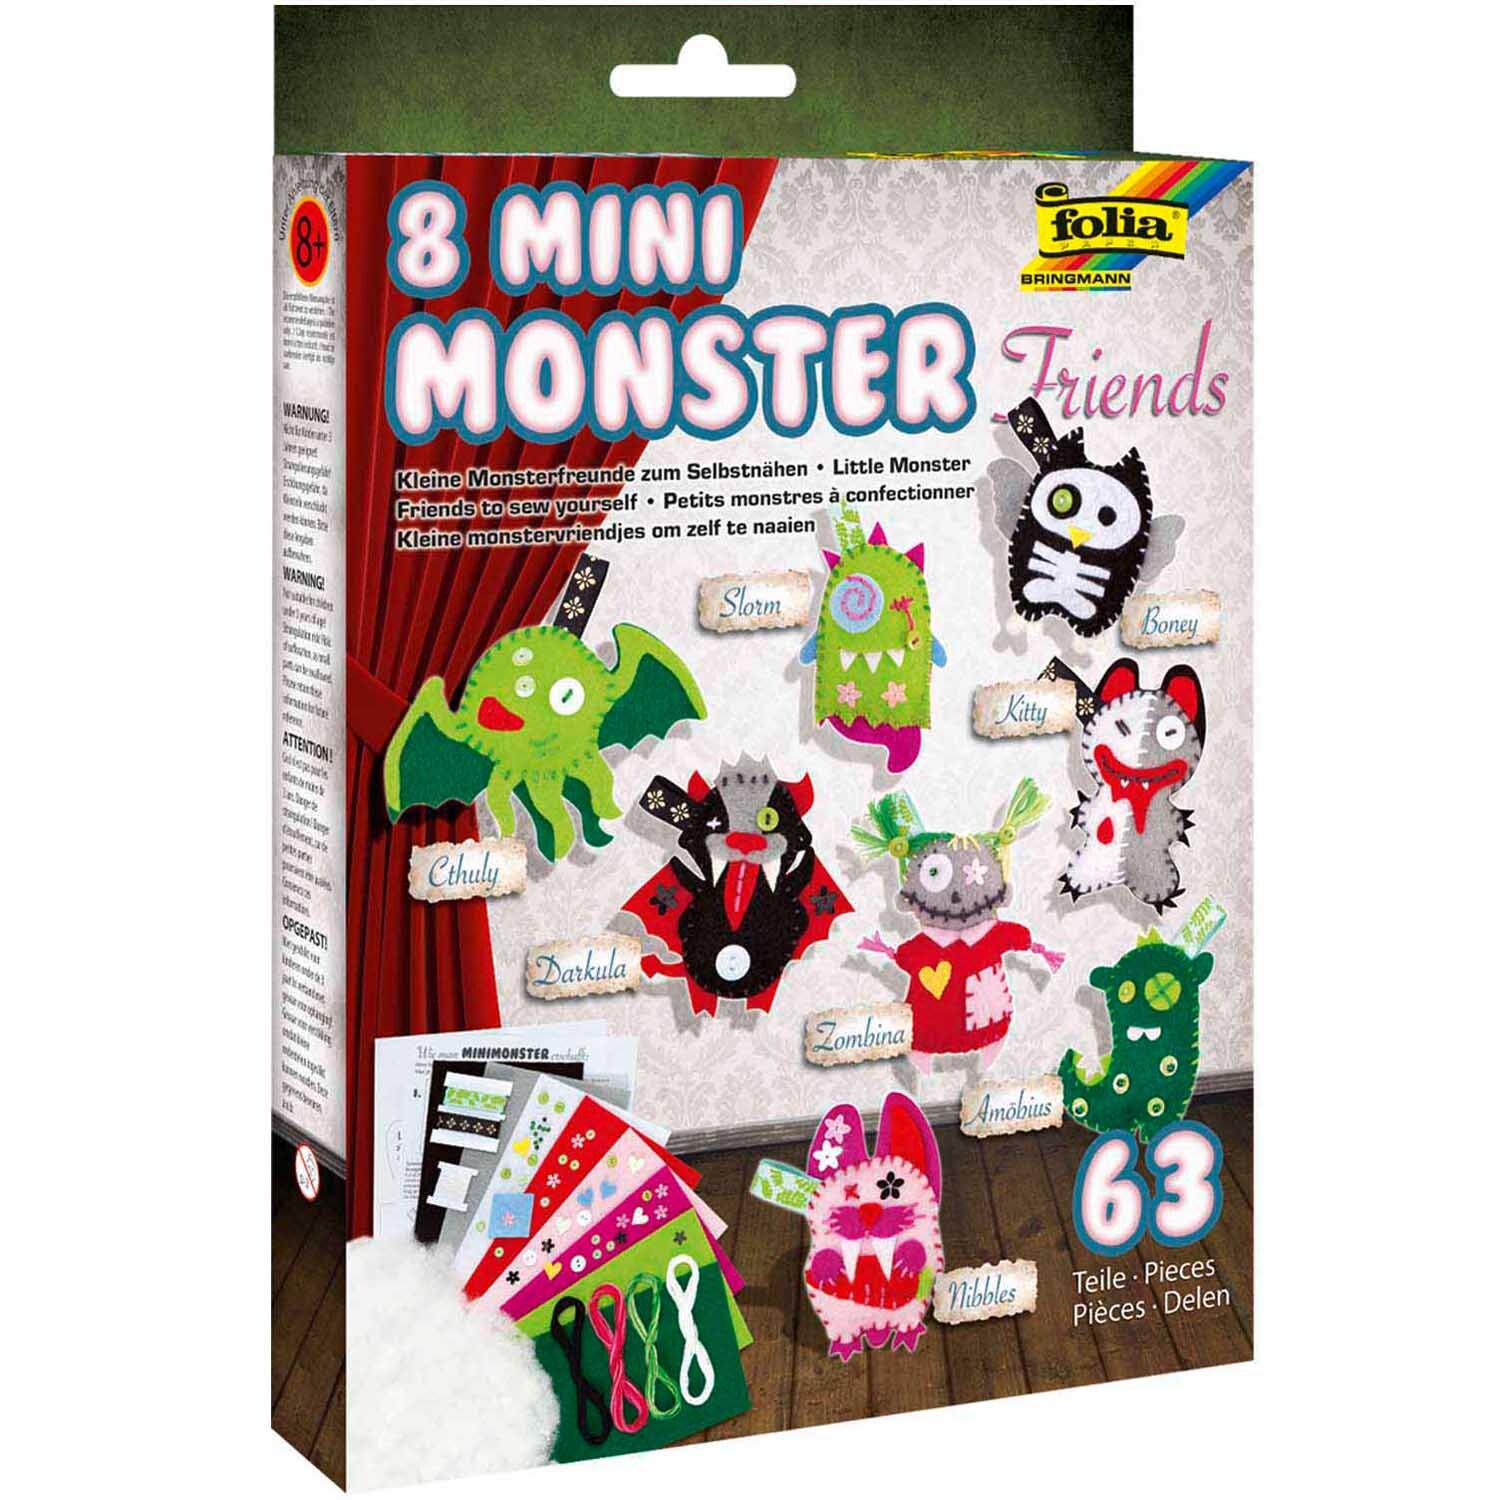 Bastelset Mini Monster für 8 Monster